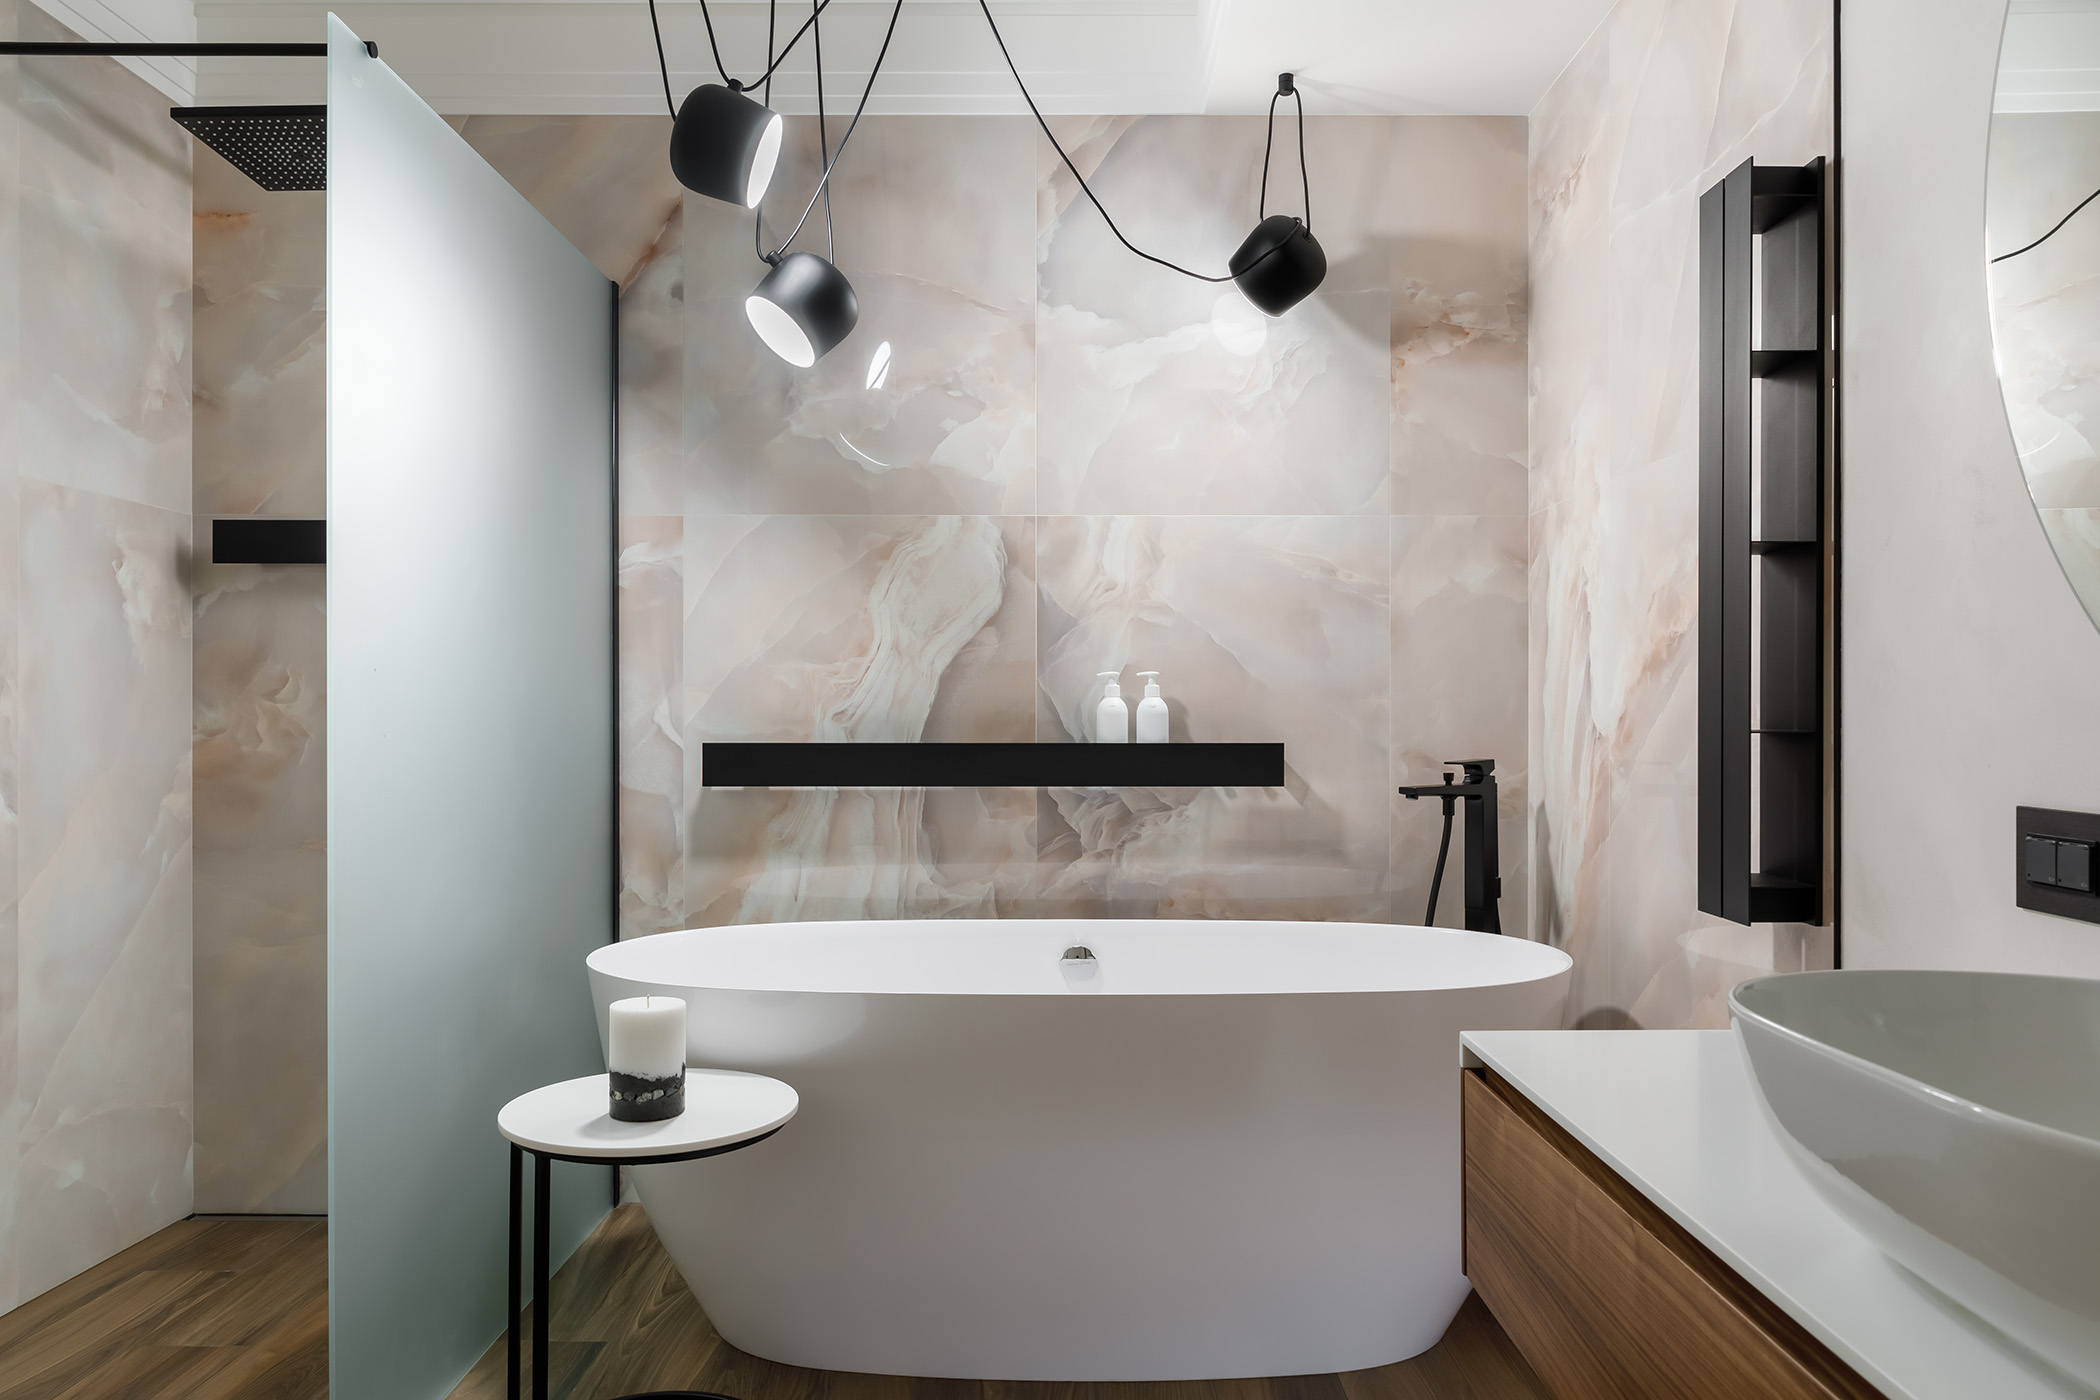 Мебель для ванной изготовлена мебельным ателье SetusProduction - проекты Setus Design